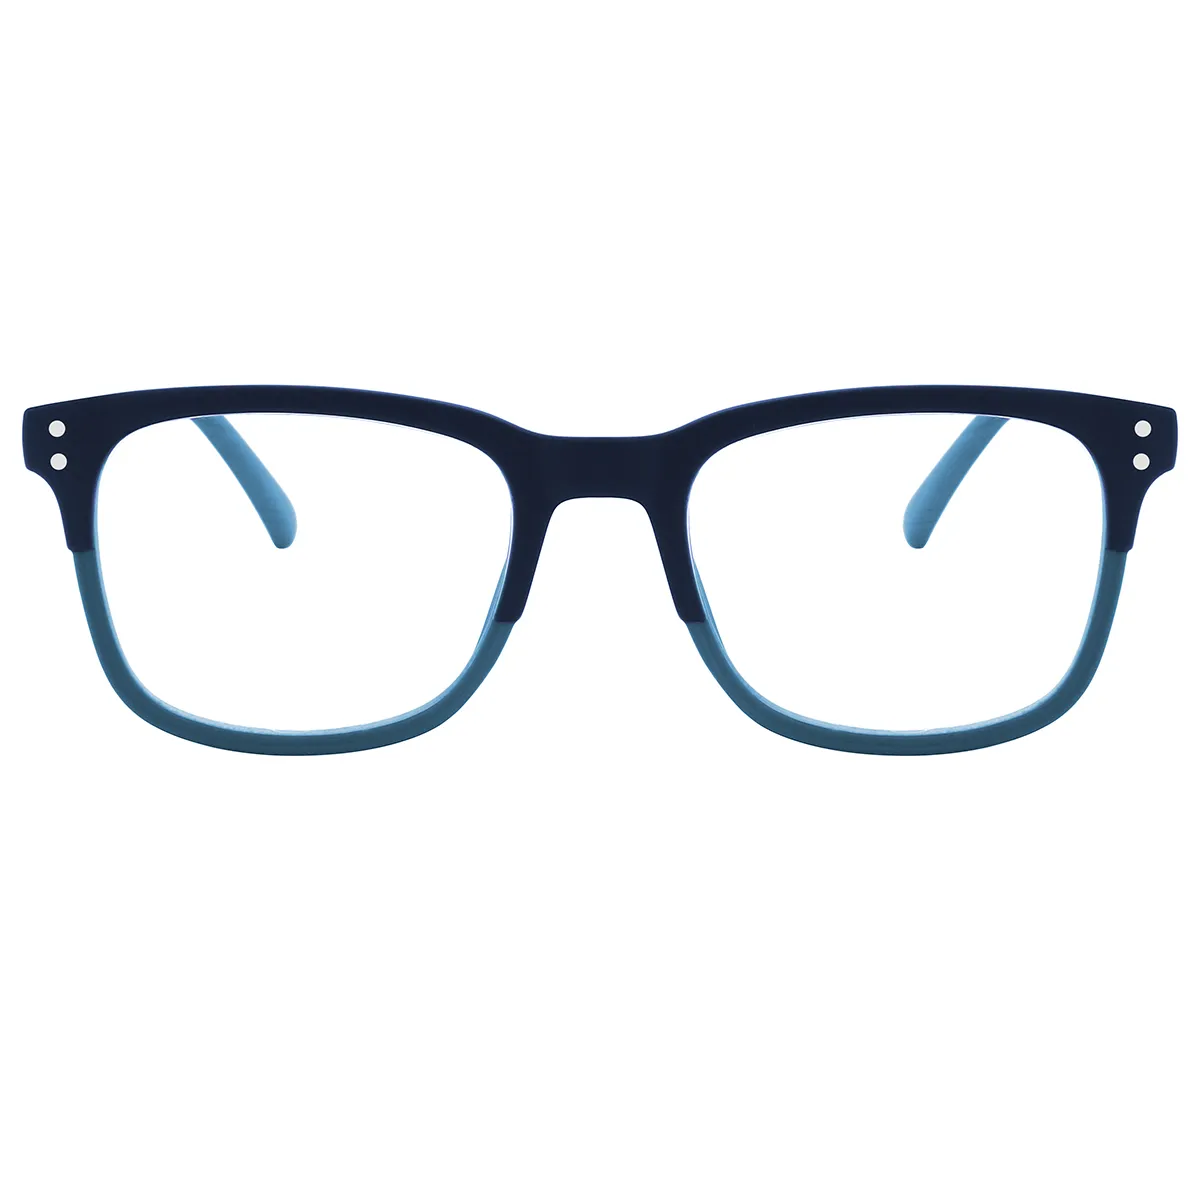 Dylan - Square Blue Reading glasses for Men